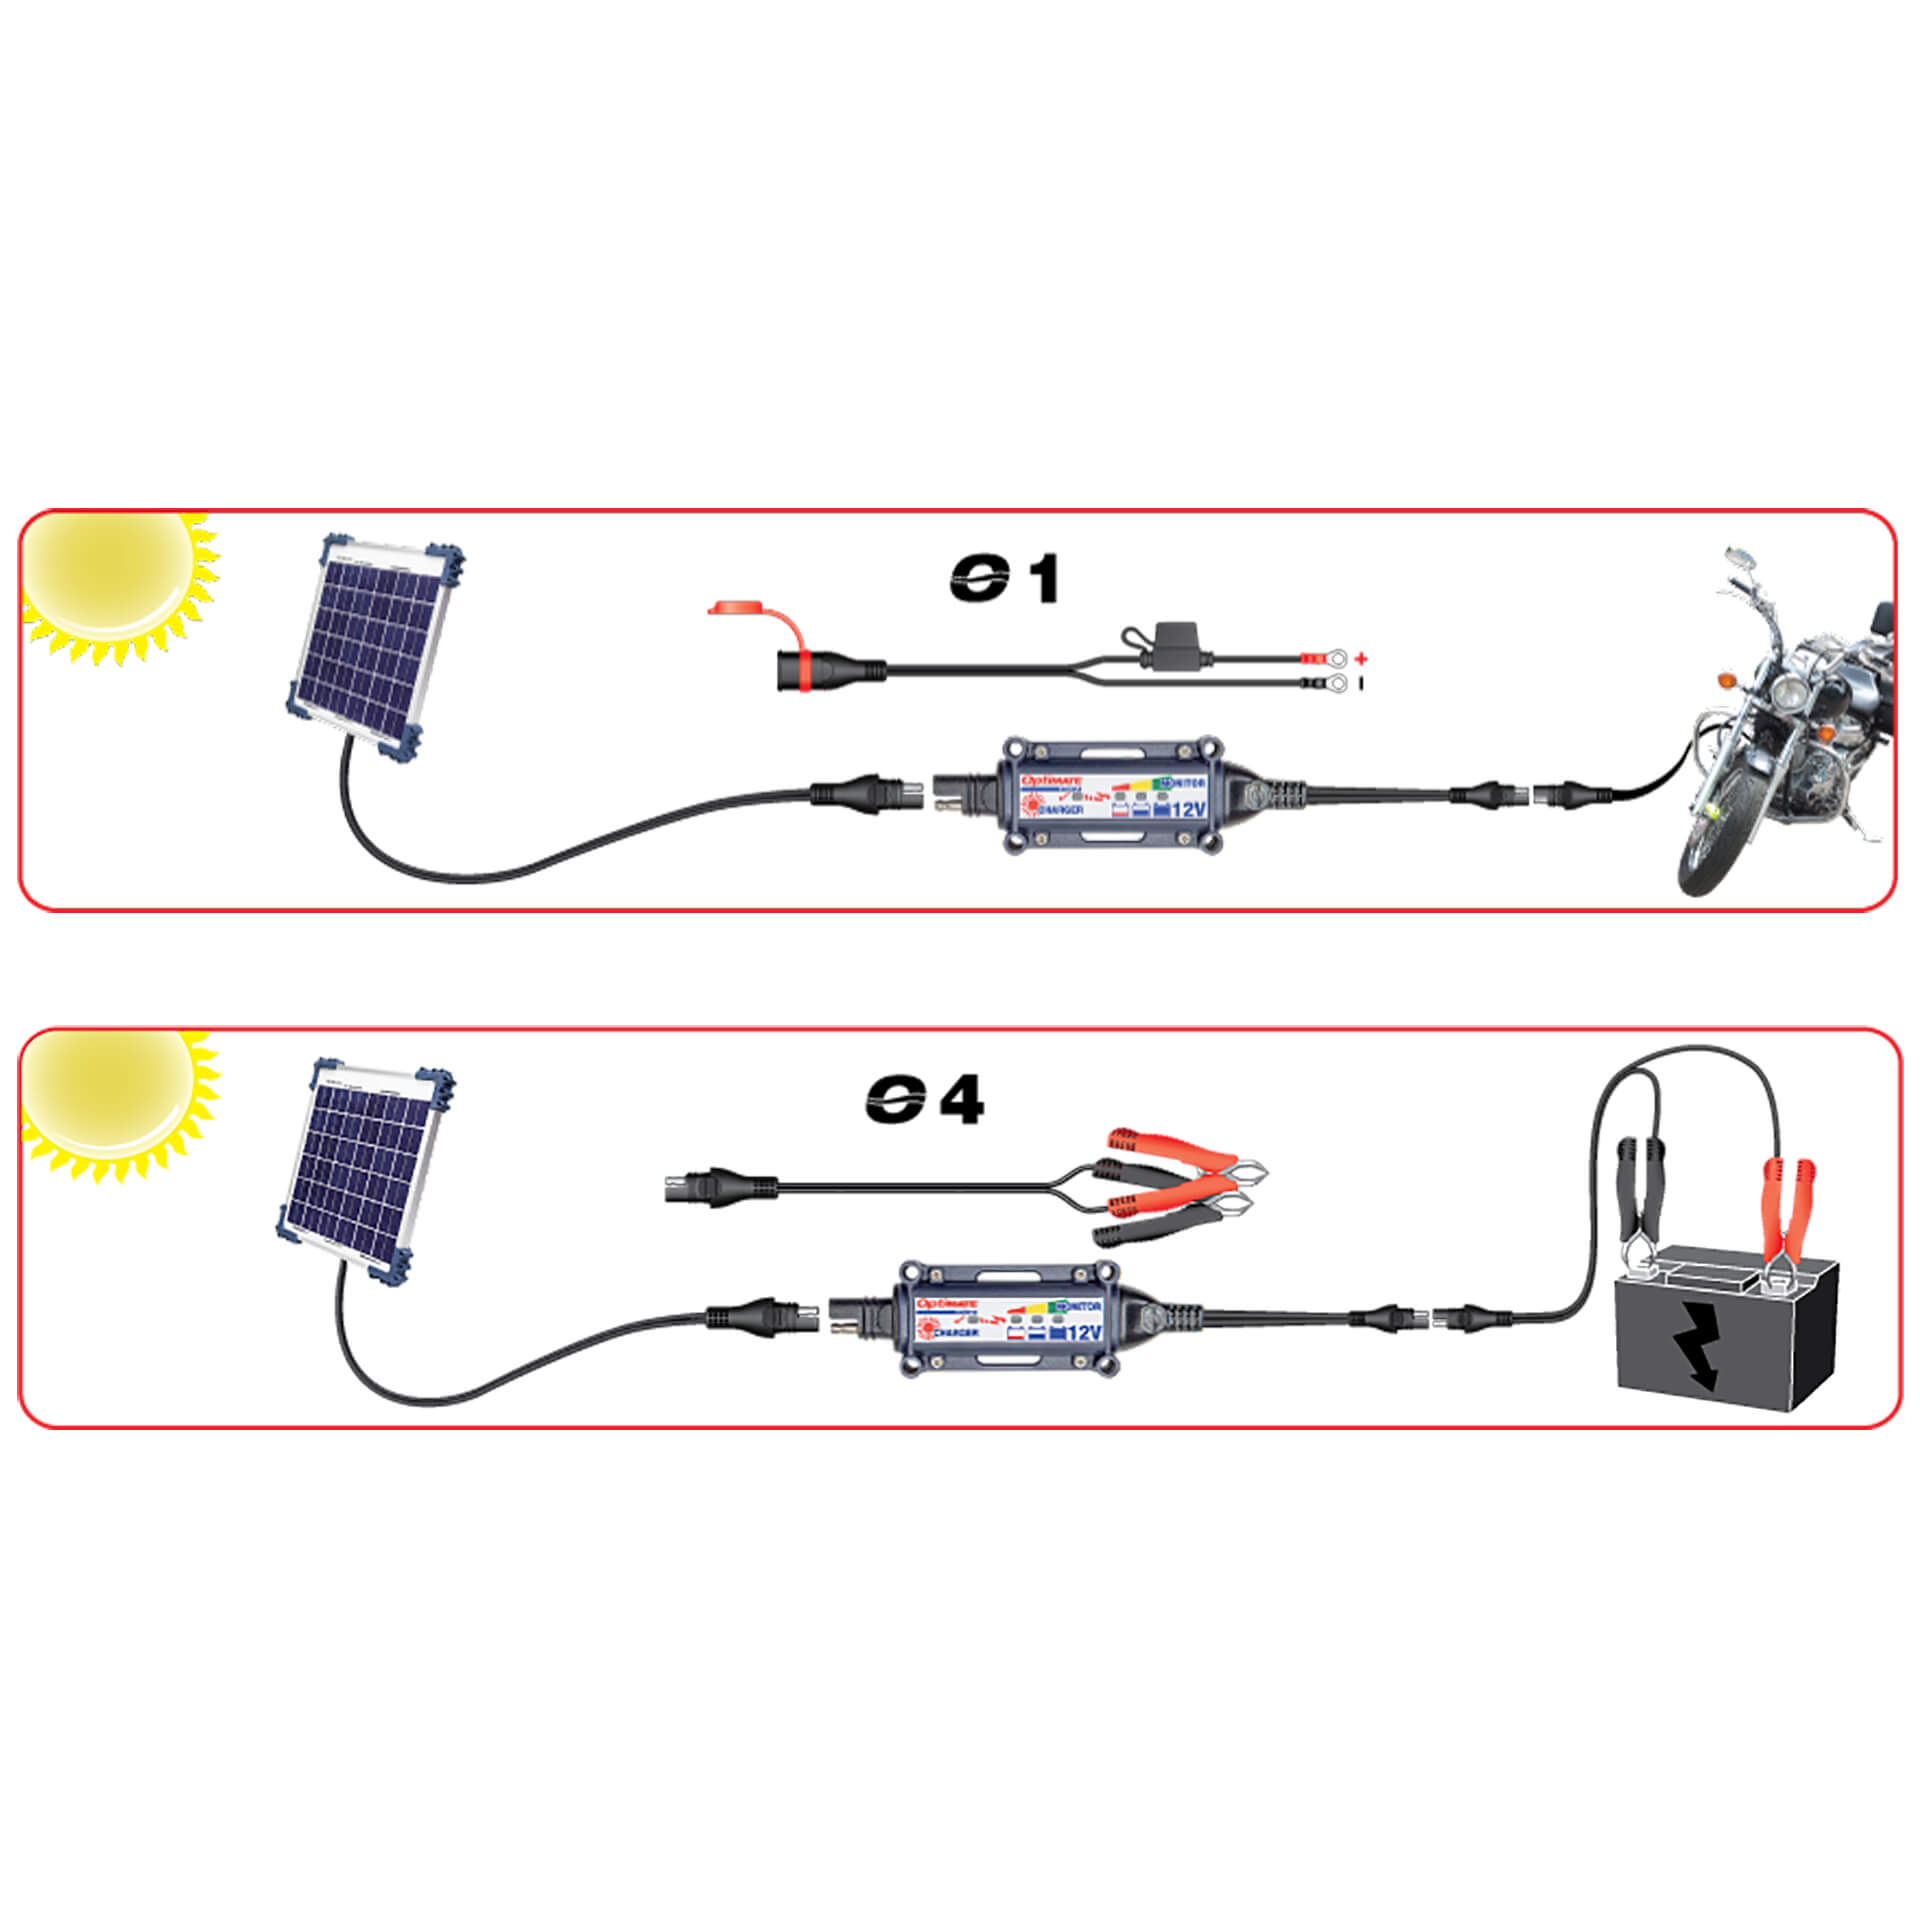 optimate Solar DUO Charger 10 Watt for Lead/GEL/AGM/LFP